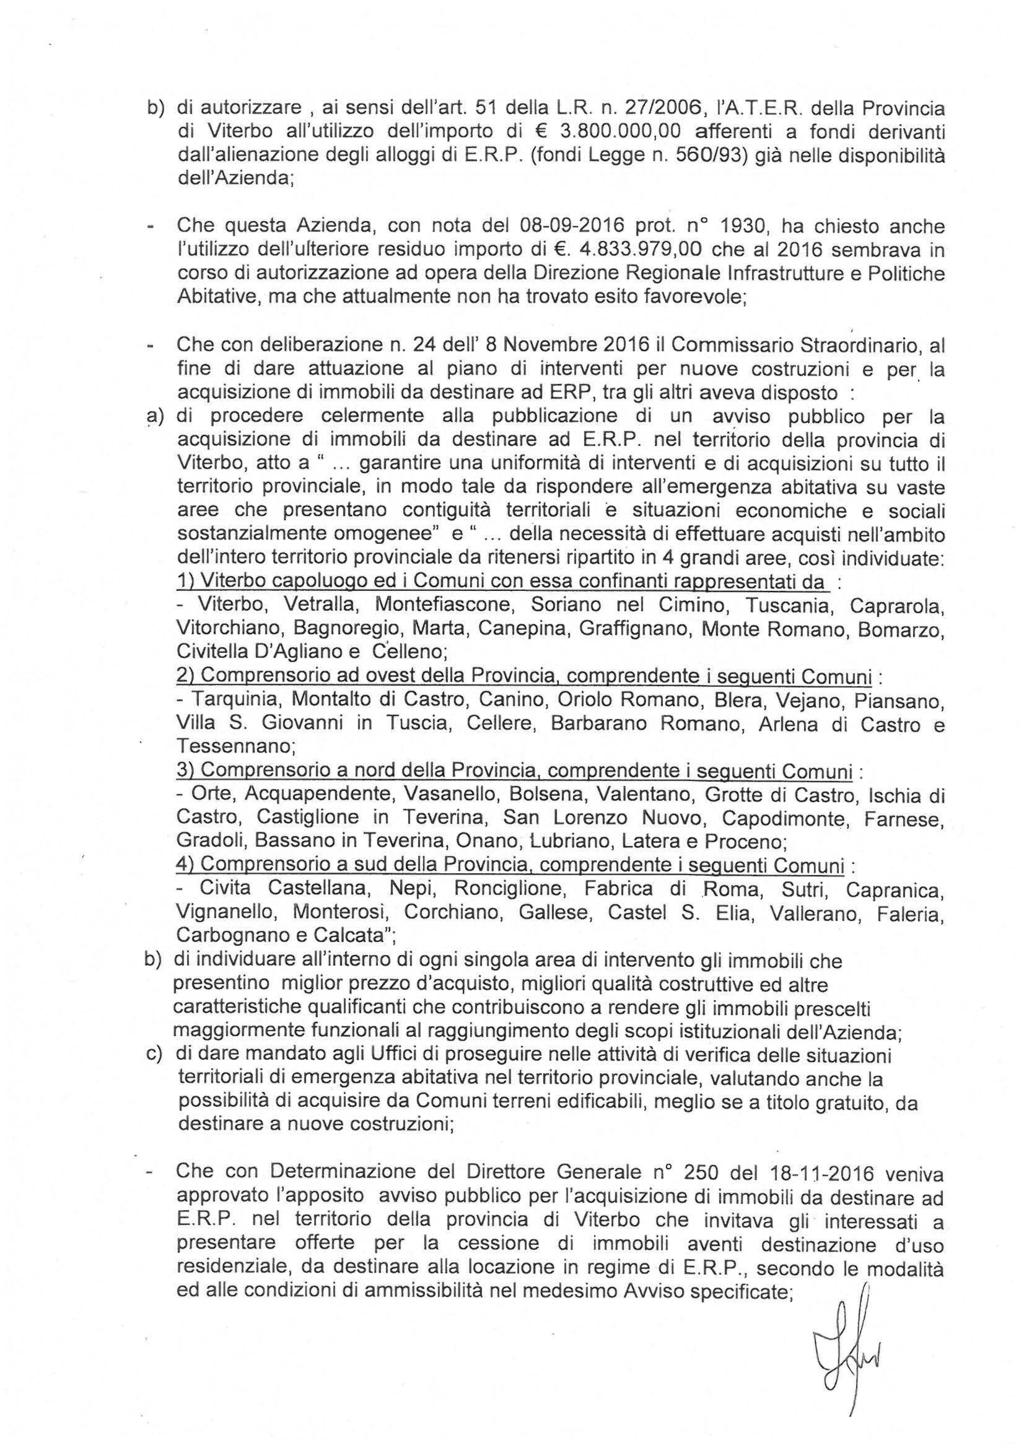 b) di autorizzare, ai sensi dell'art. 51 della L.R. n. 27/2006, l'a.t.e.r. della Provincia di Viterbo all'utilizzo dell'importo di 3.800.